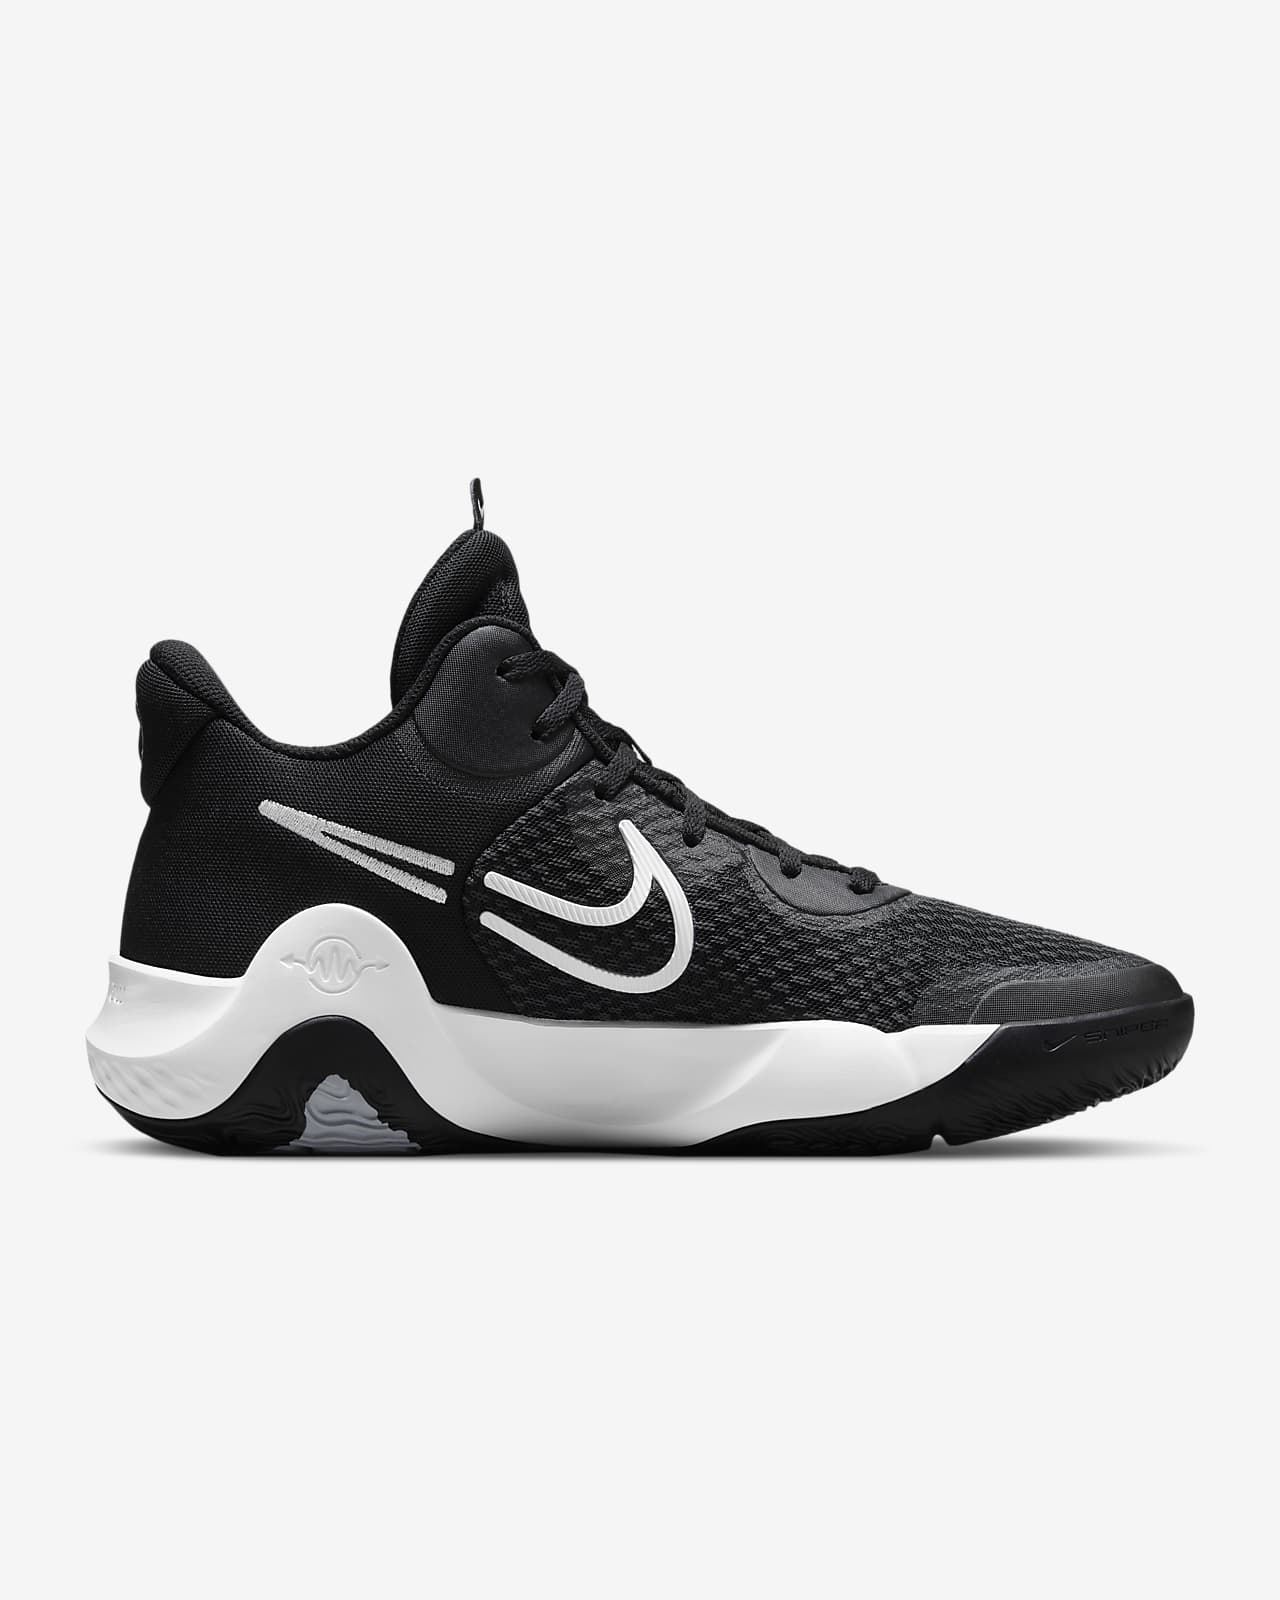 KD Trey 5 IX Basketball Shoe. Nike.com